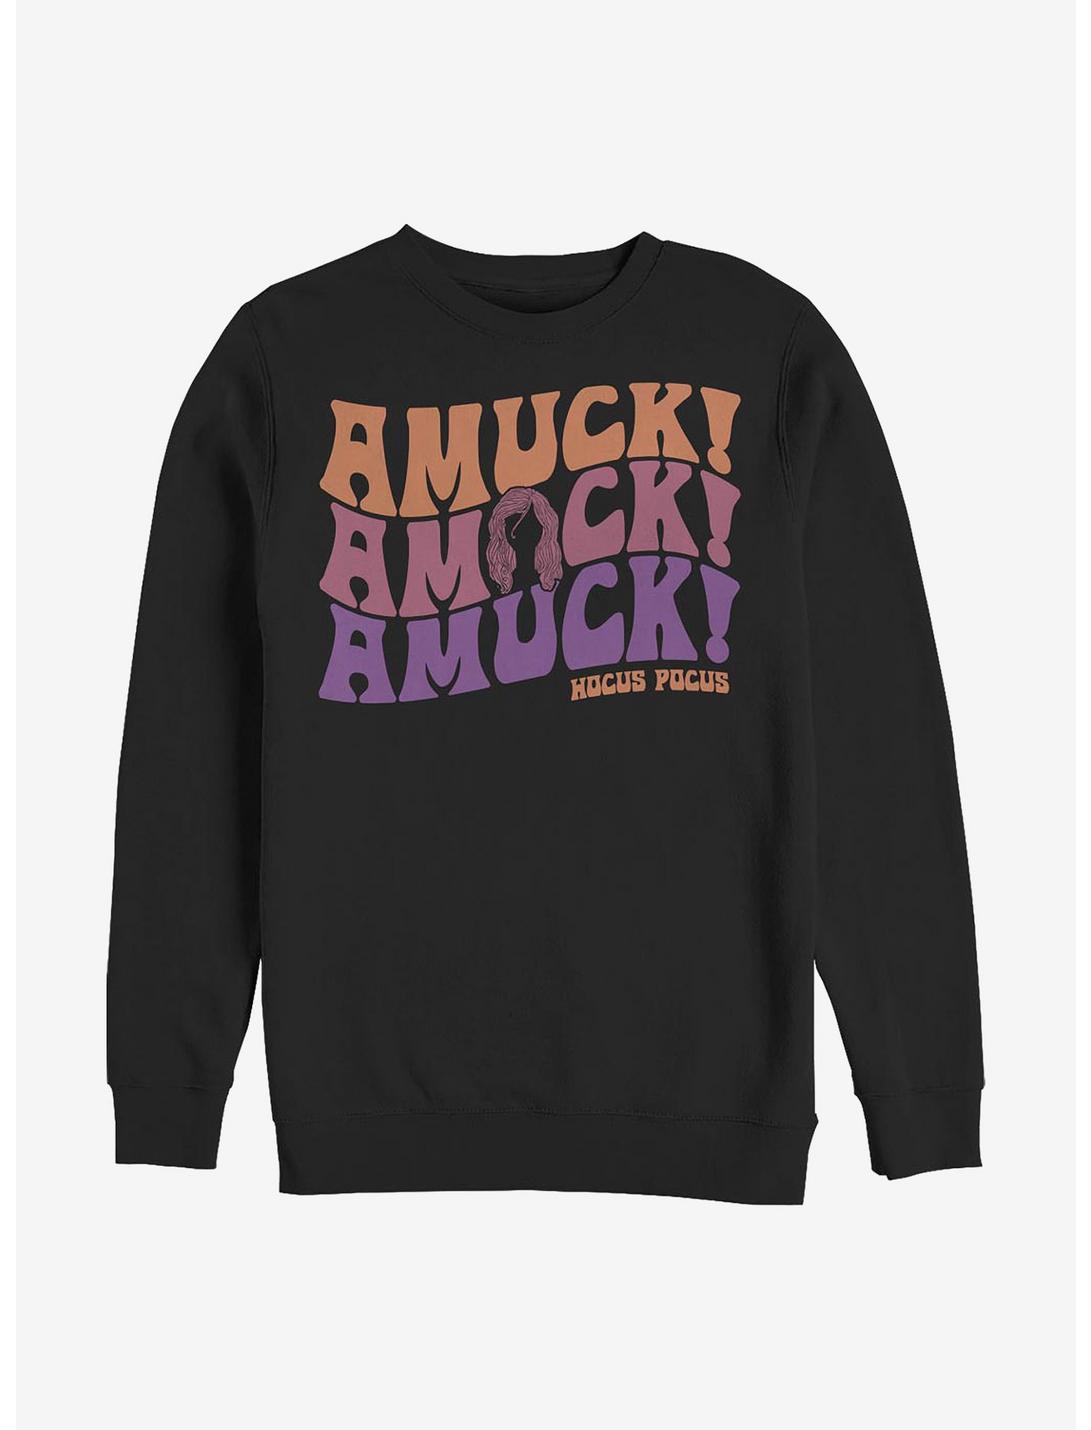 Disney Hocus Pocus Amuck Amuck Amuck Sweatshirt, BLACK, hi-res